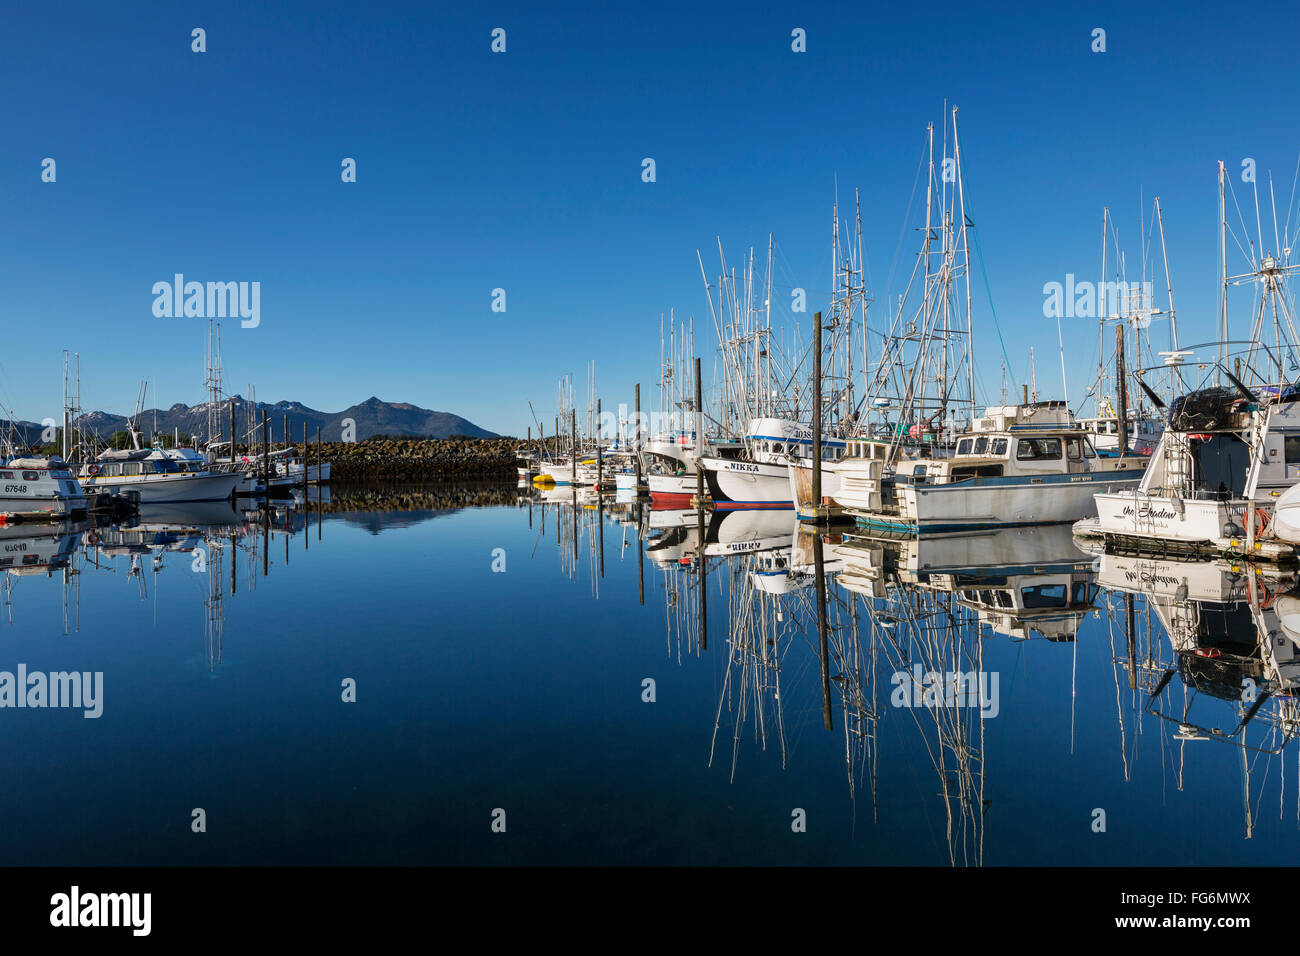 Bateaux de pêche reflètent dans les eaux calmes dans le port de Sitka, ciel clair à l'arrière-plan, Sitka, AK, États-Unis d'Amérique du Sud-Est, l'été Banque D'Images